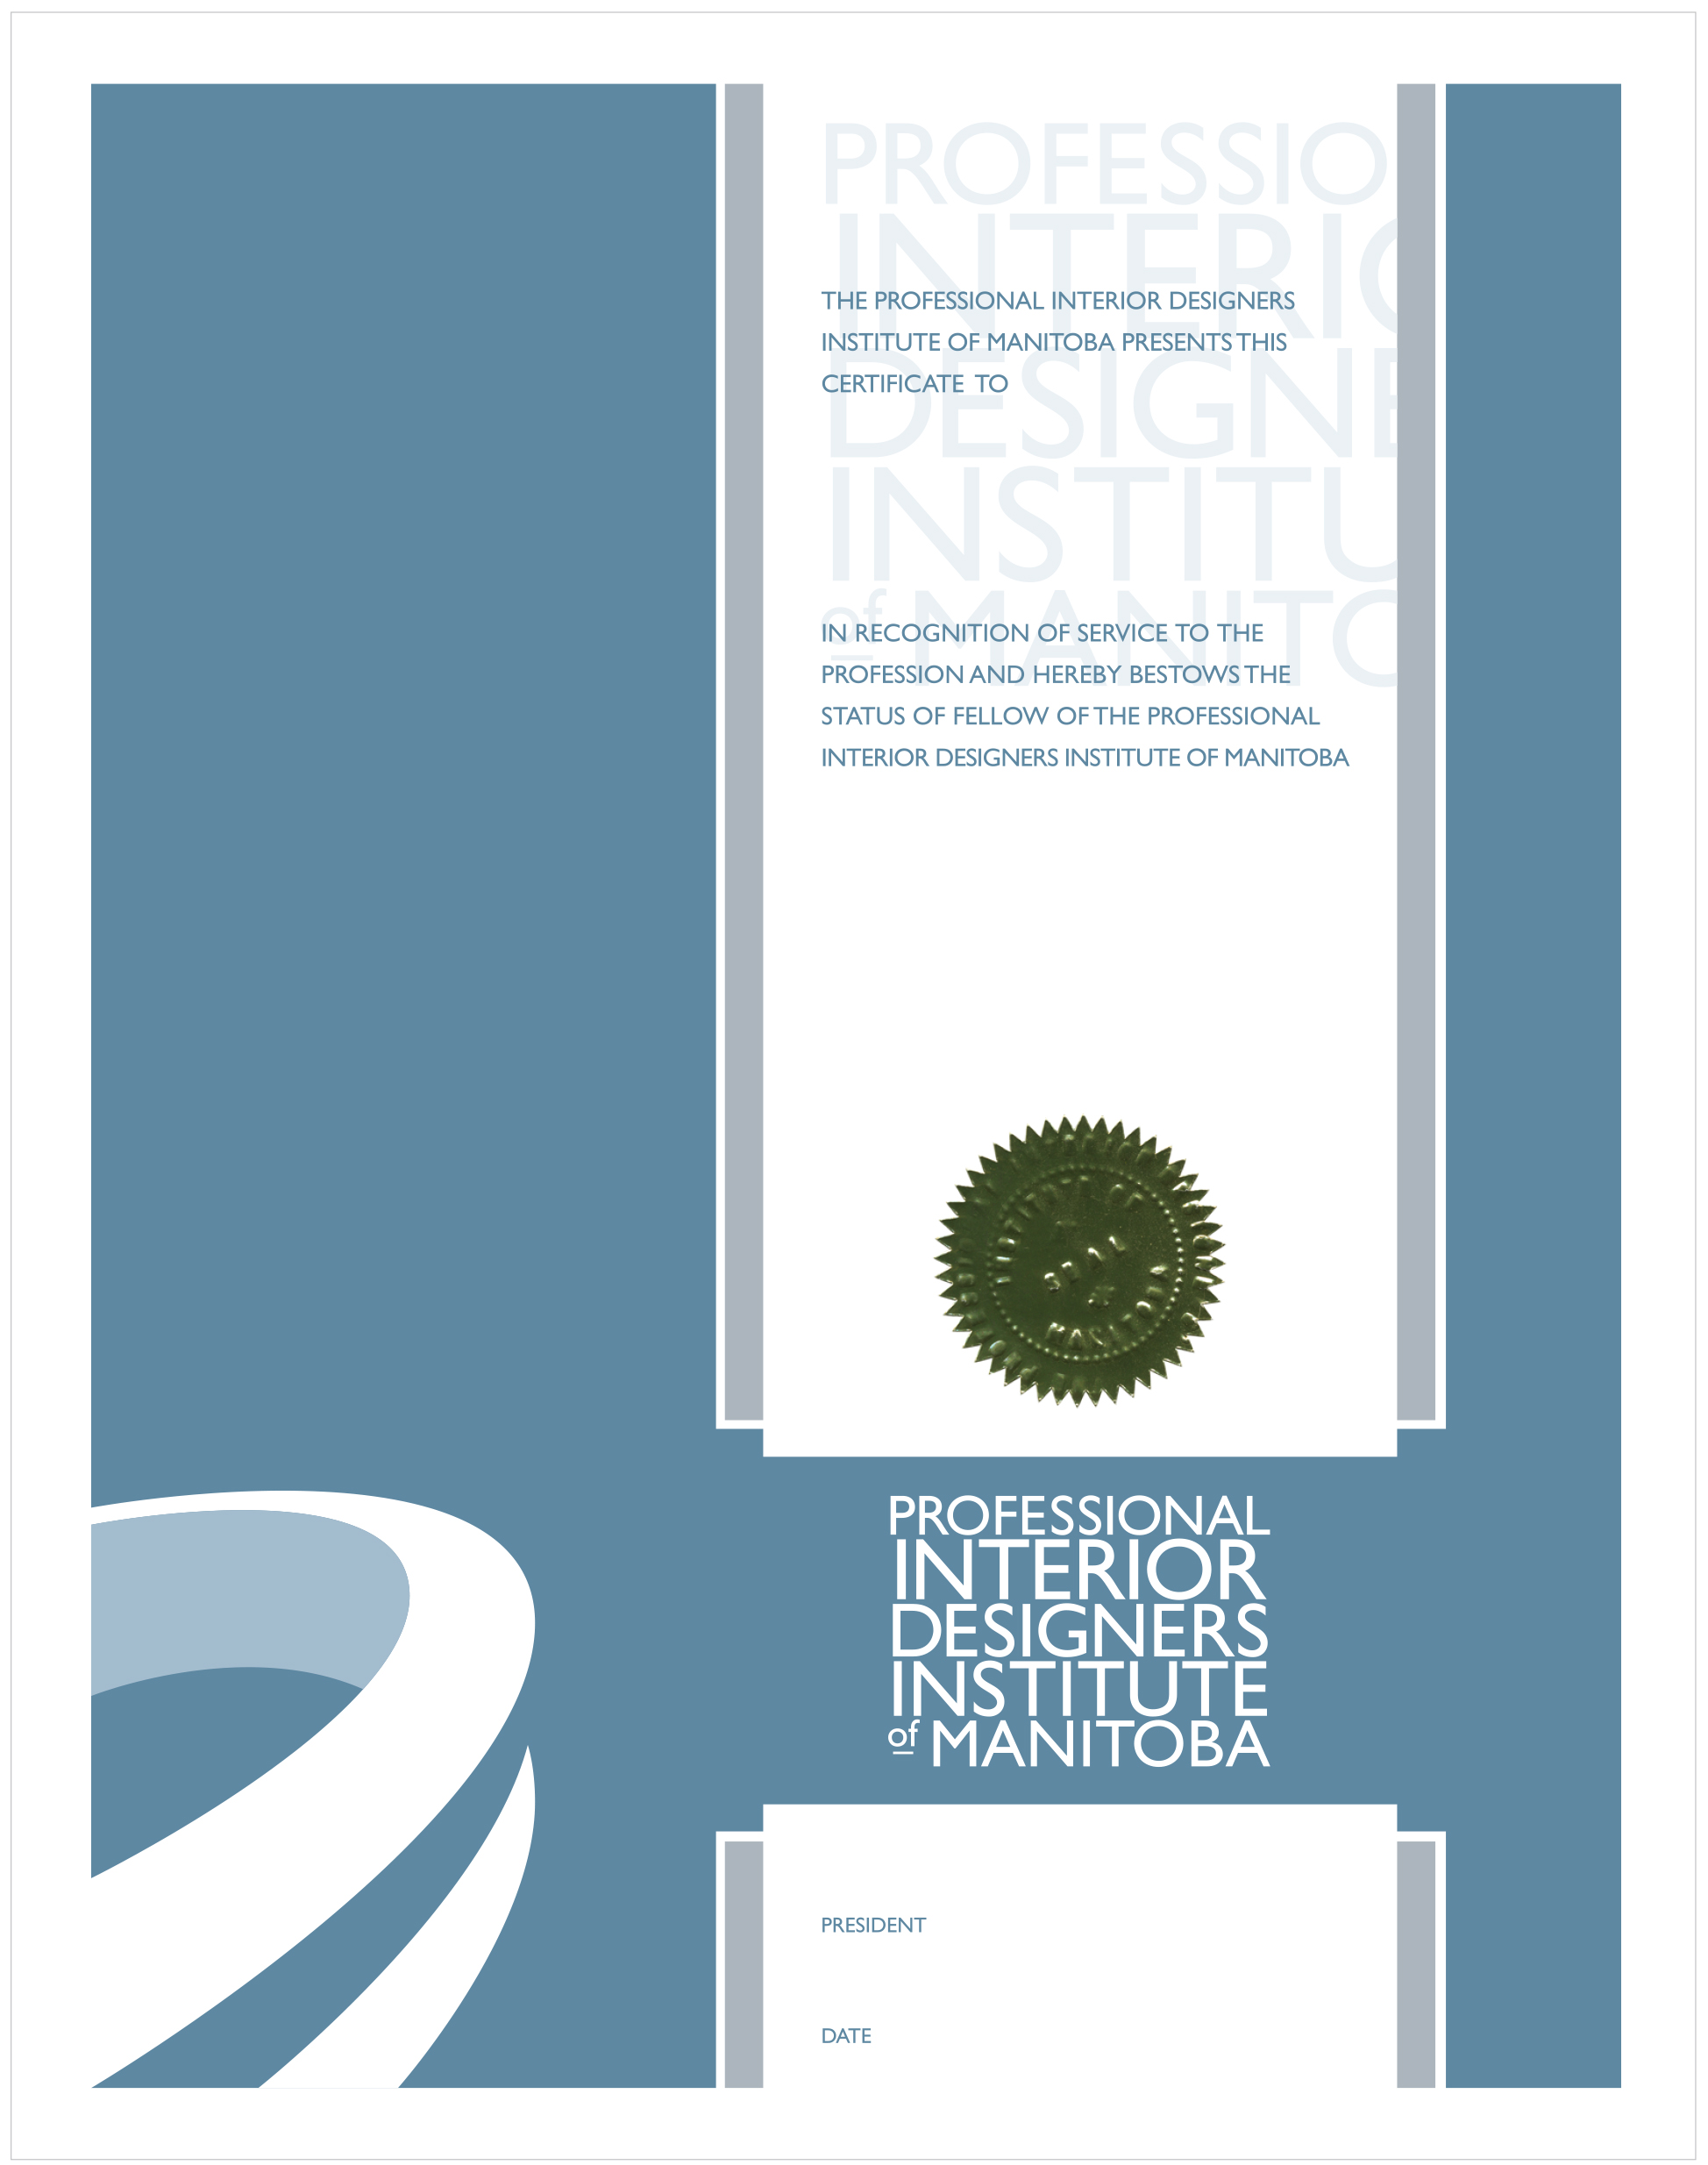 Professional Interior Designers Institute of Manitoba (PIDIM)